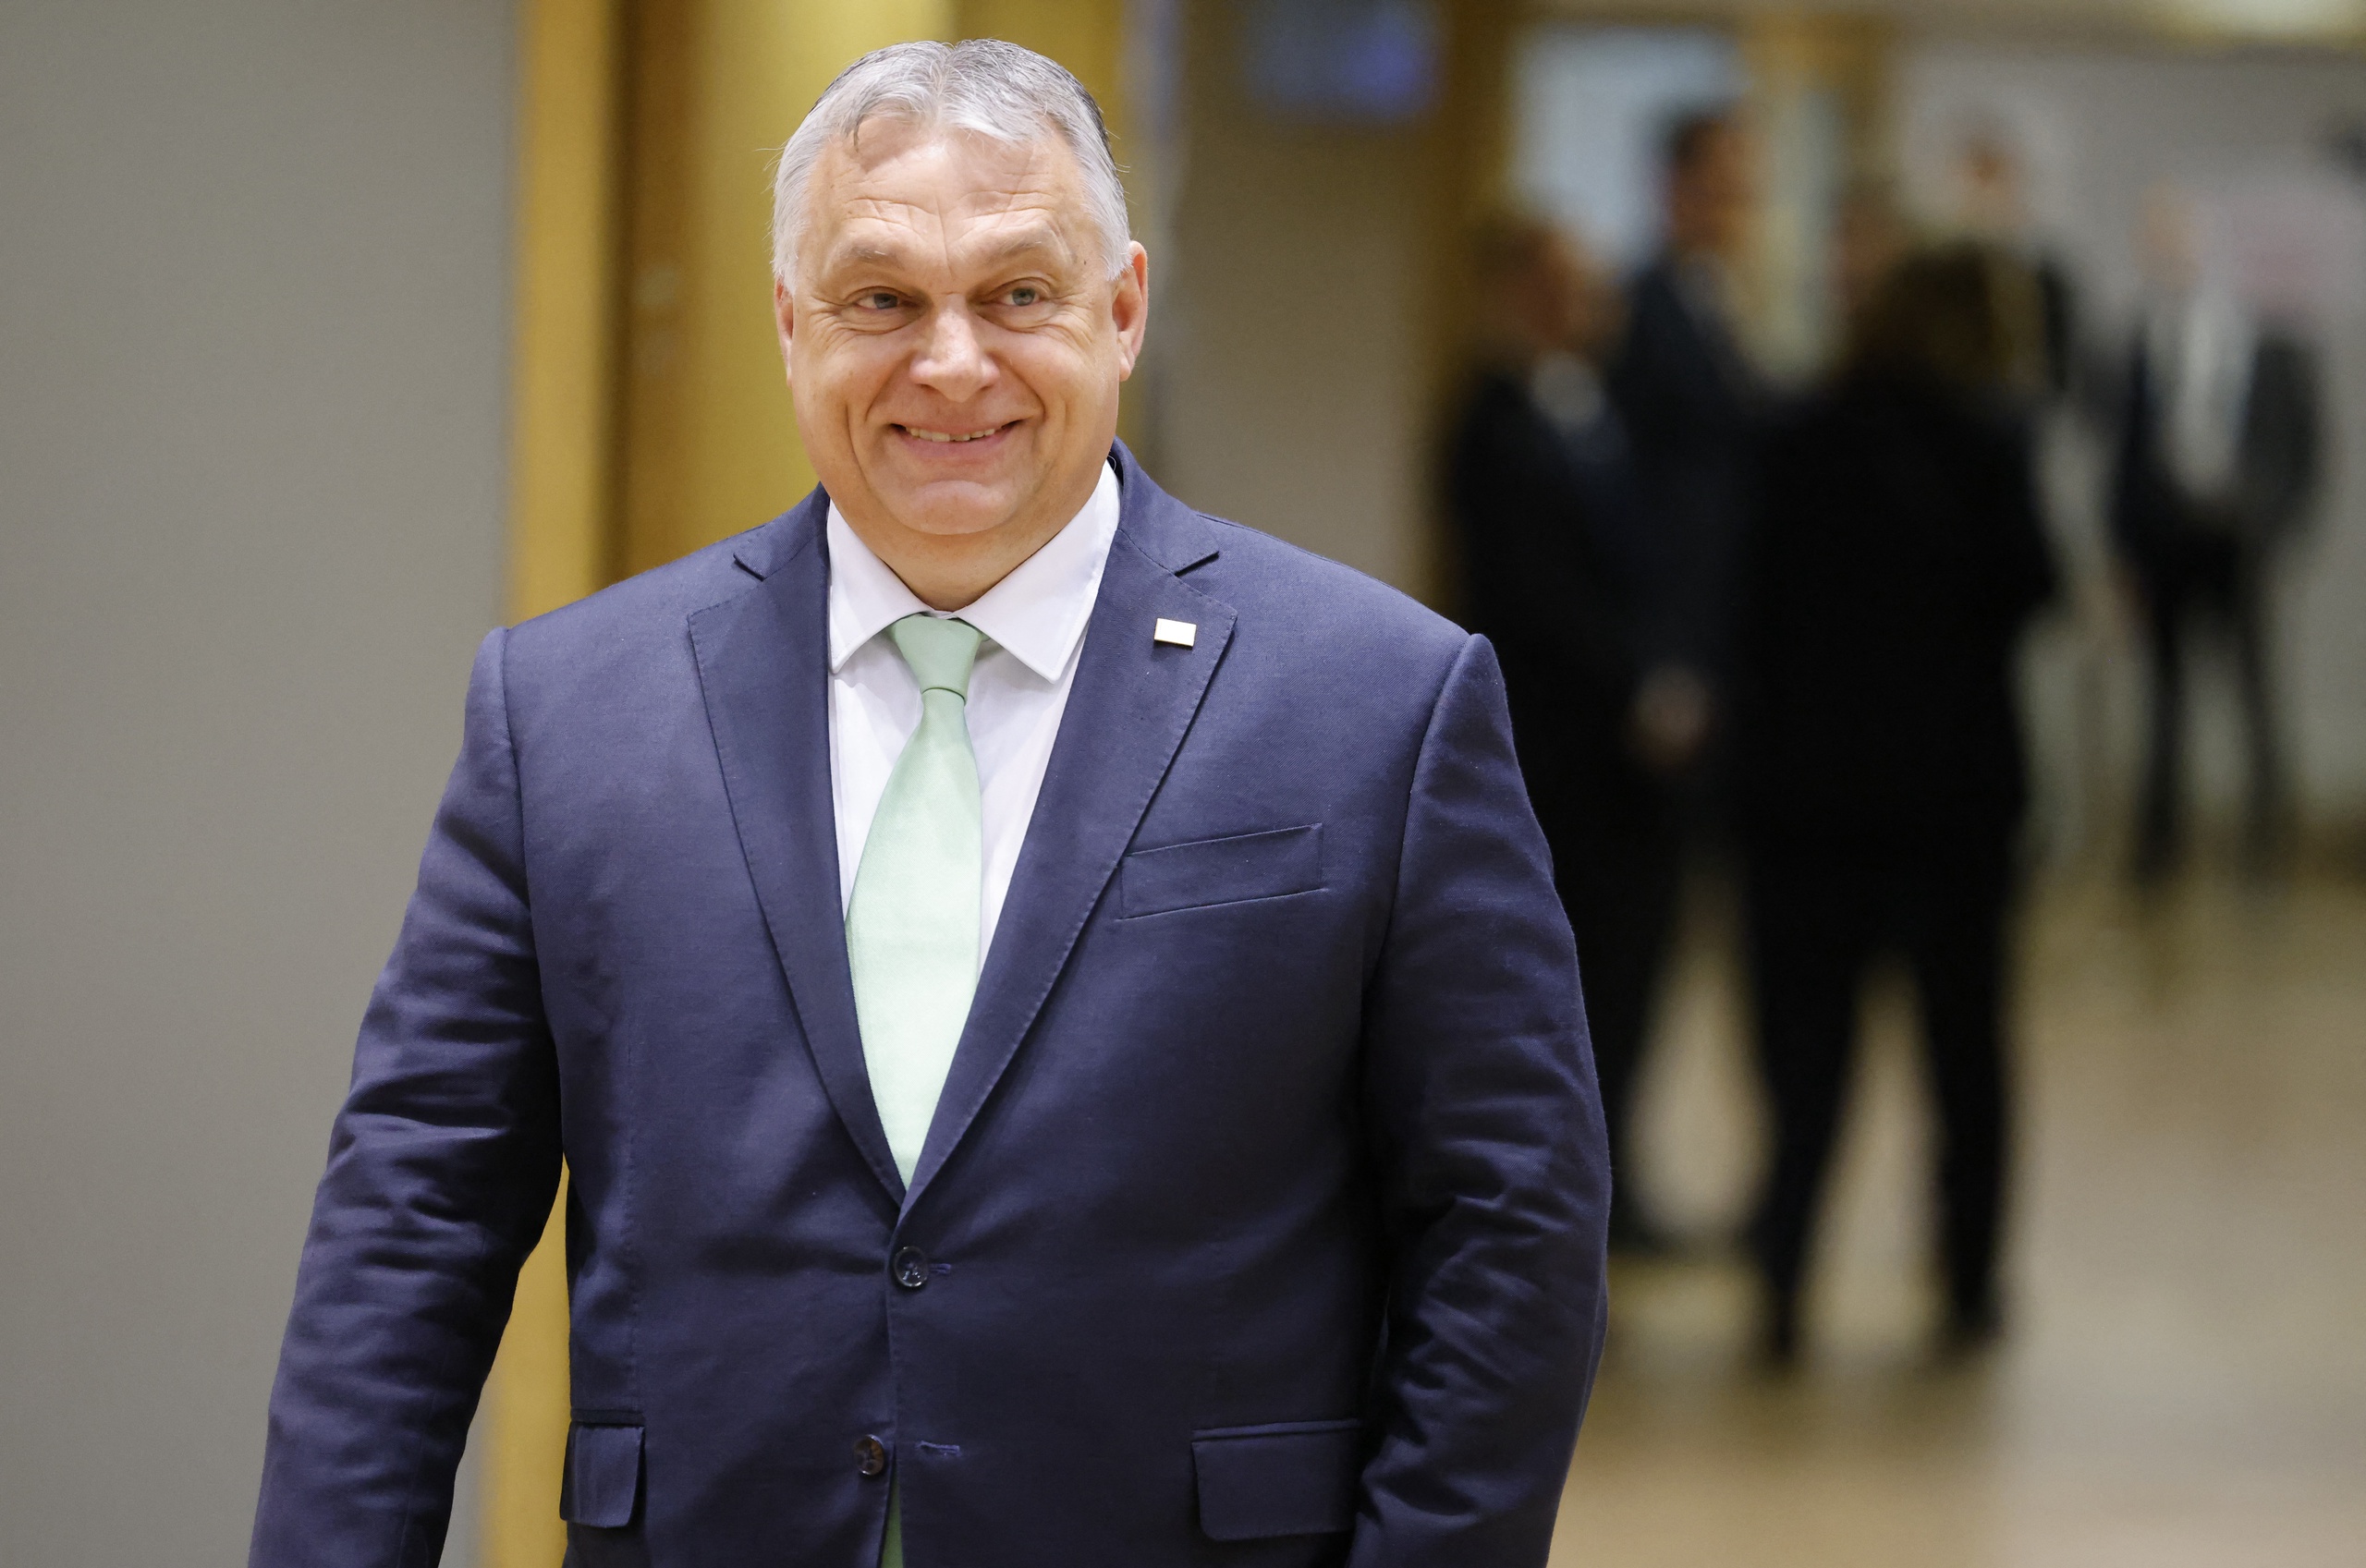 Vanwege een 'groot aantal grieven' over de kritiek van Zweden op het beleid van de Hongaarse premier Viktor Orban, is de regering niet van plan een stemming toe te laten. Dat zegt een woordvoerder van de Hongaarse regering. 